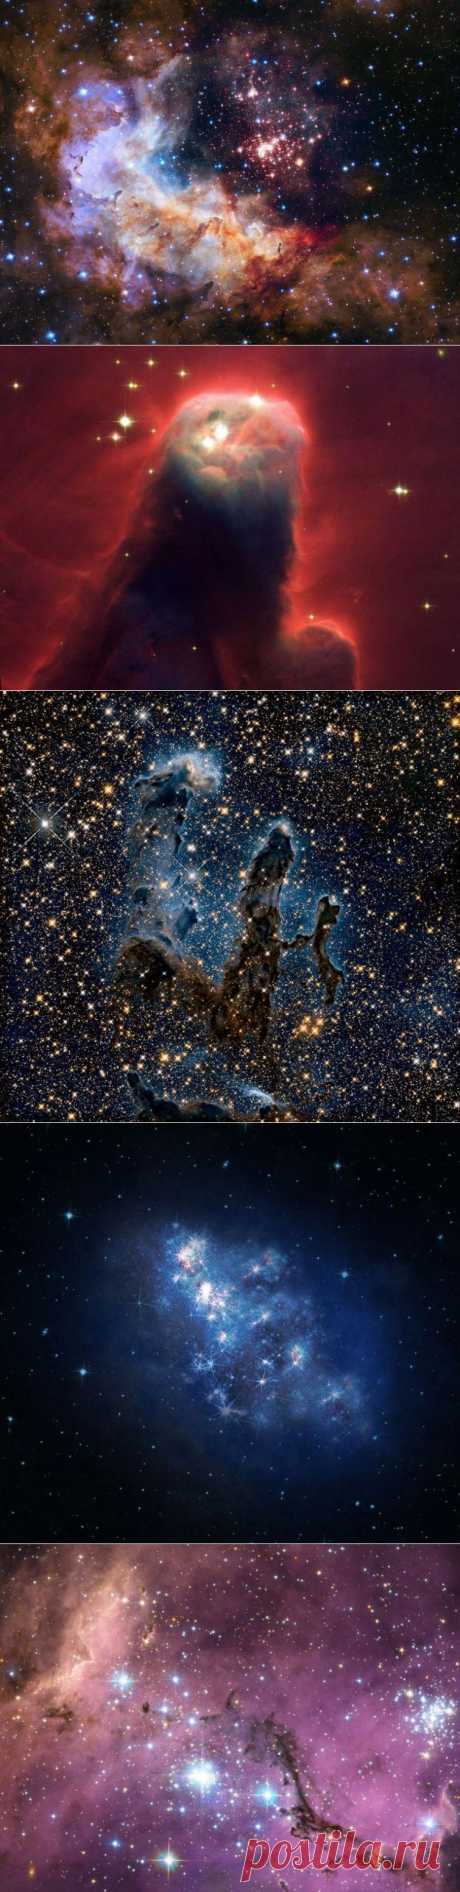 Хабблу 25 лет: 15 потрясающих фотографий, сделанных космическим телескопом Хаббл | Ультрамарин